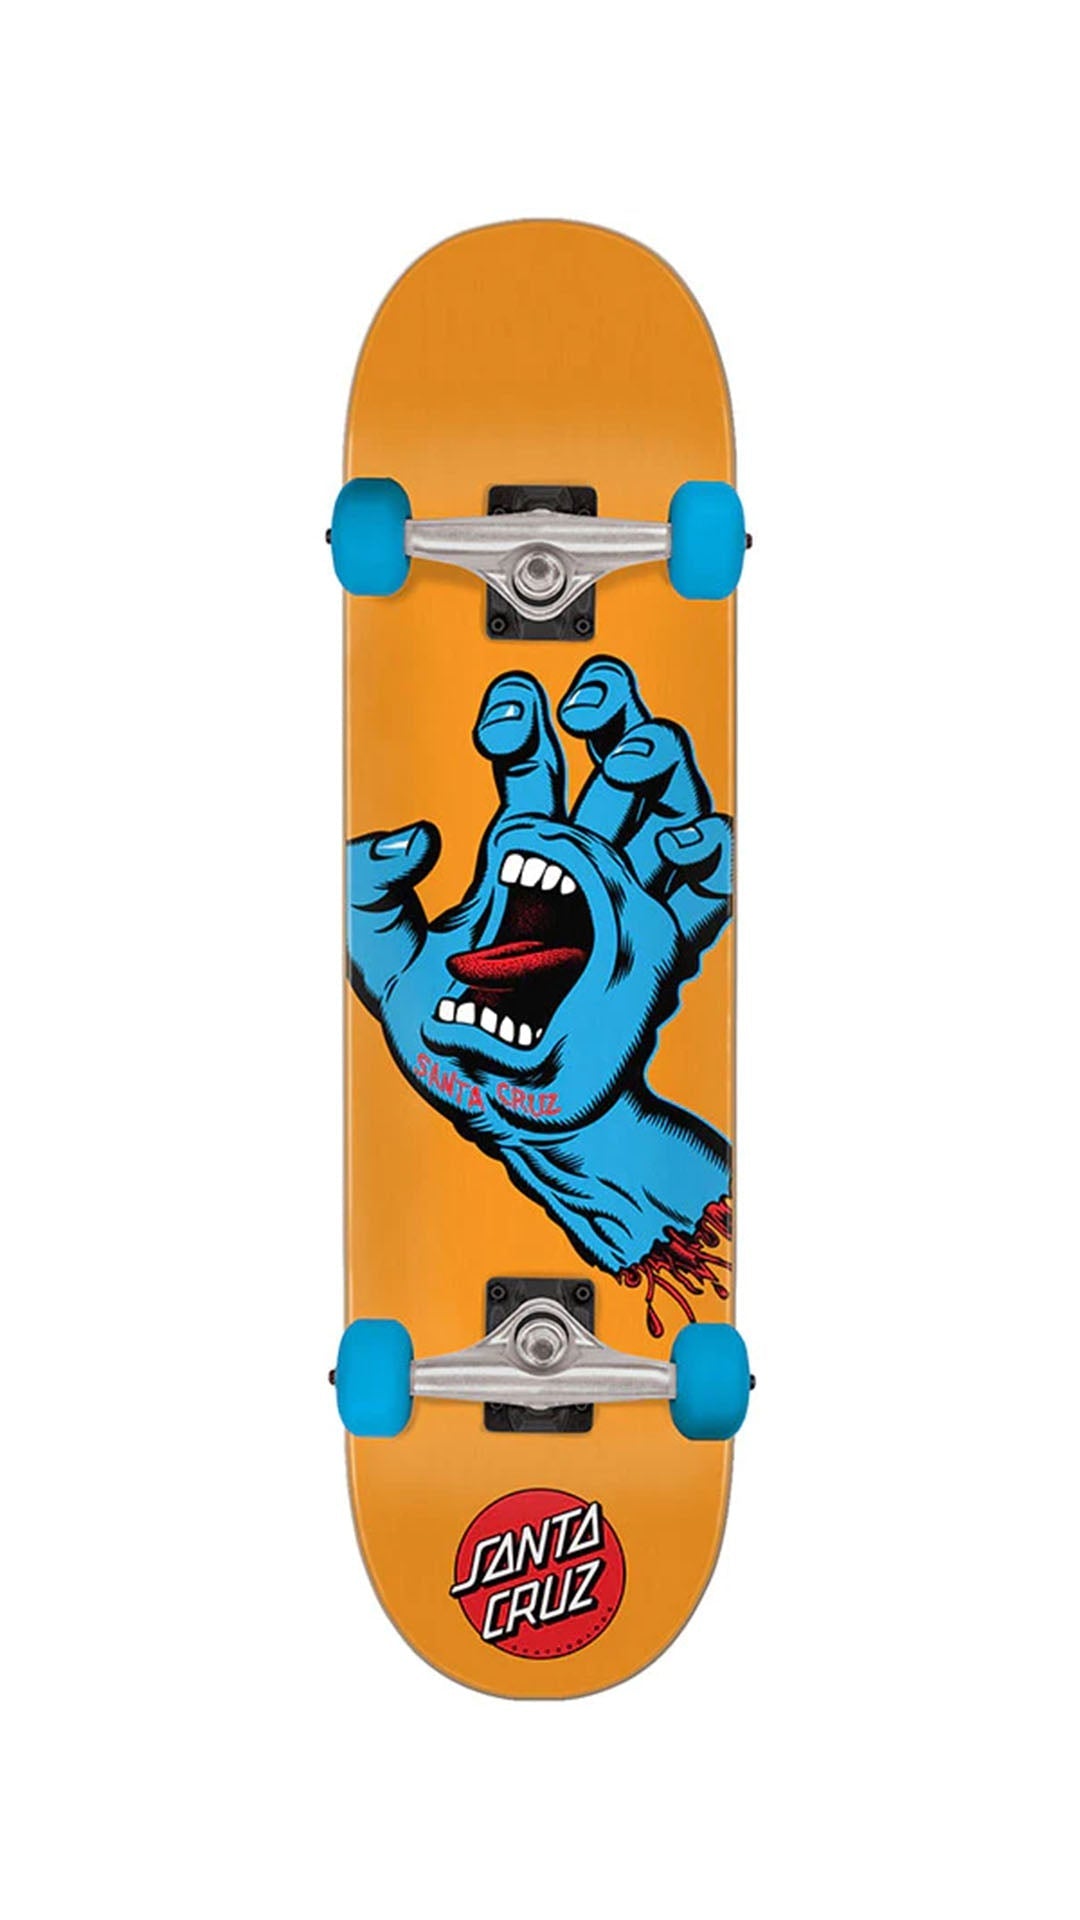 Santa Cruz Screaming Hand Mid 7.80 Complete - Completos Completos Santa Cruz Skateboards 